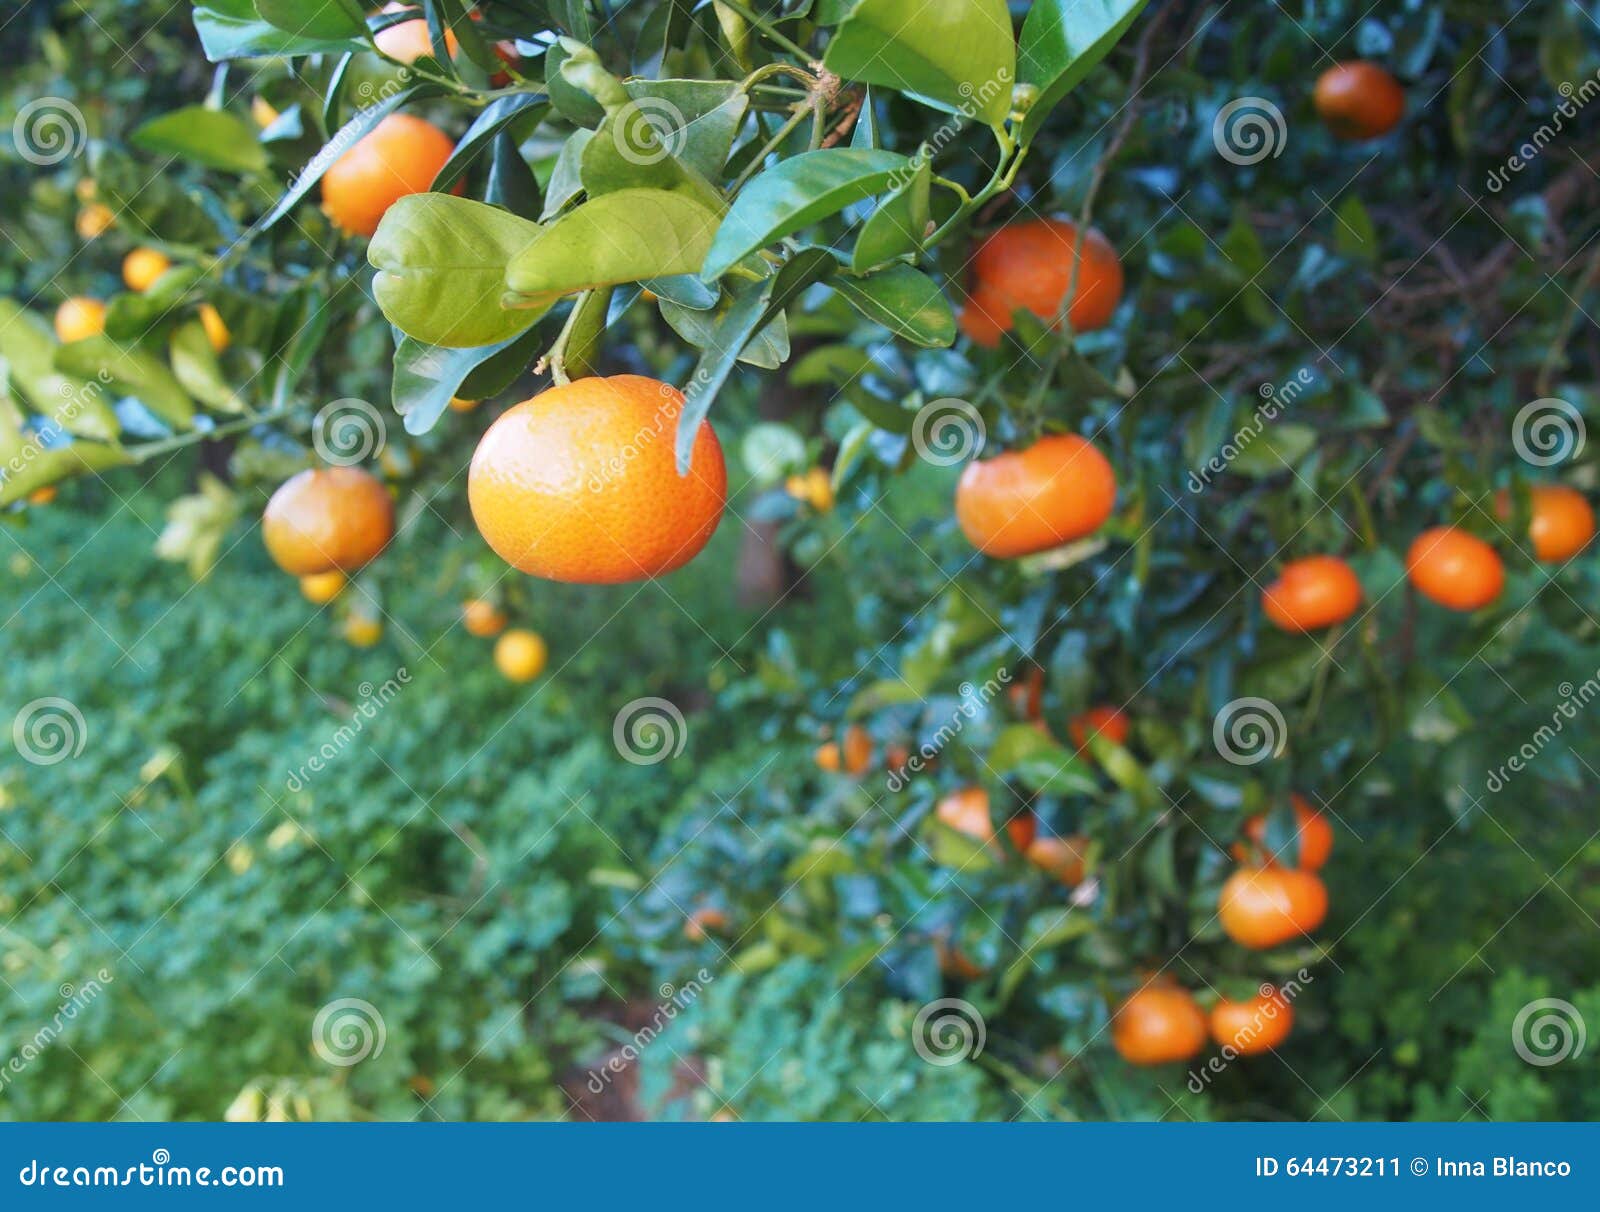 bloomy mandarina garden in valencia